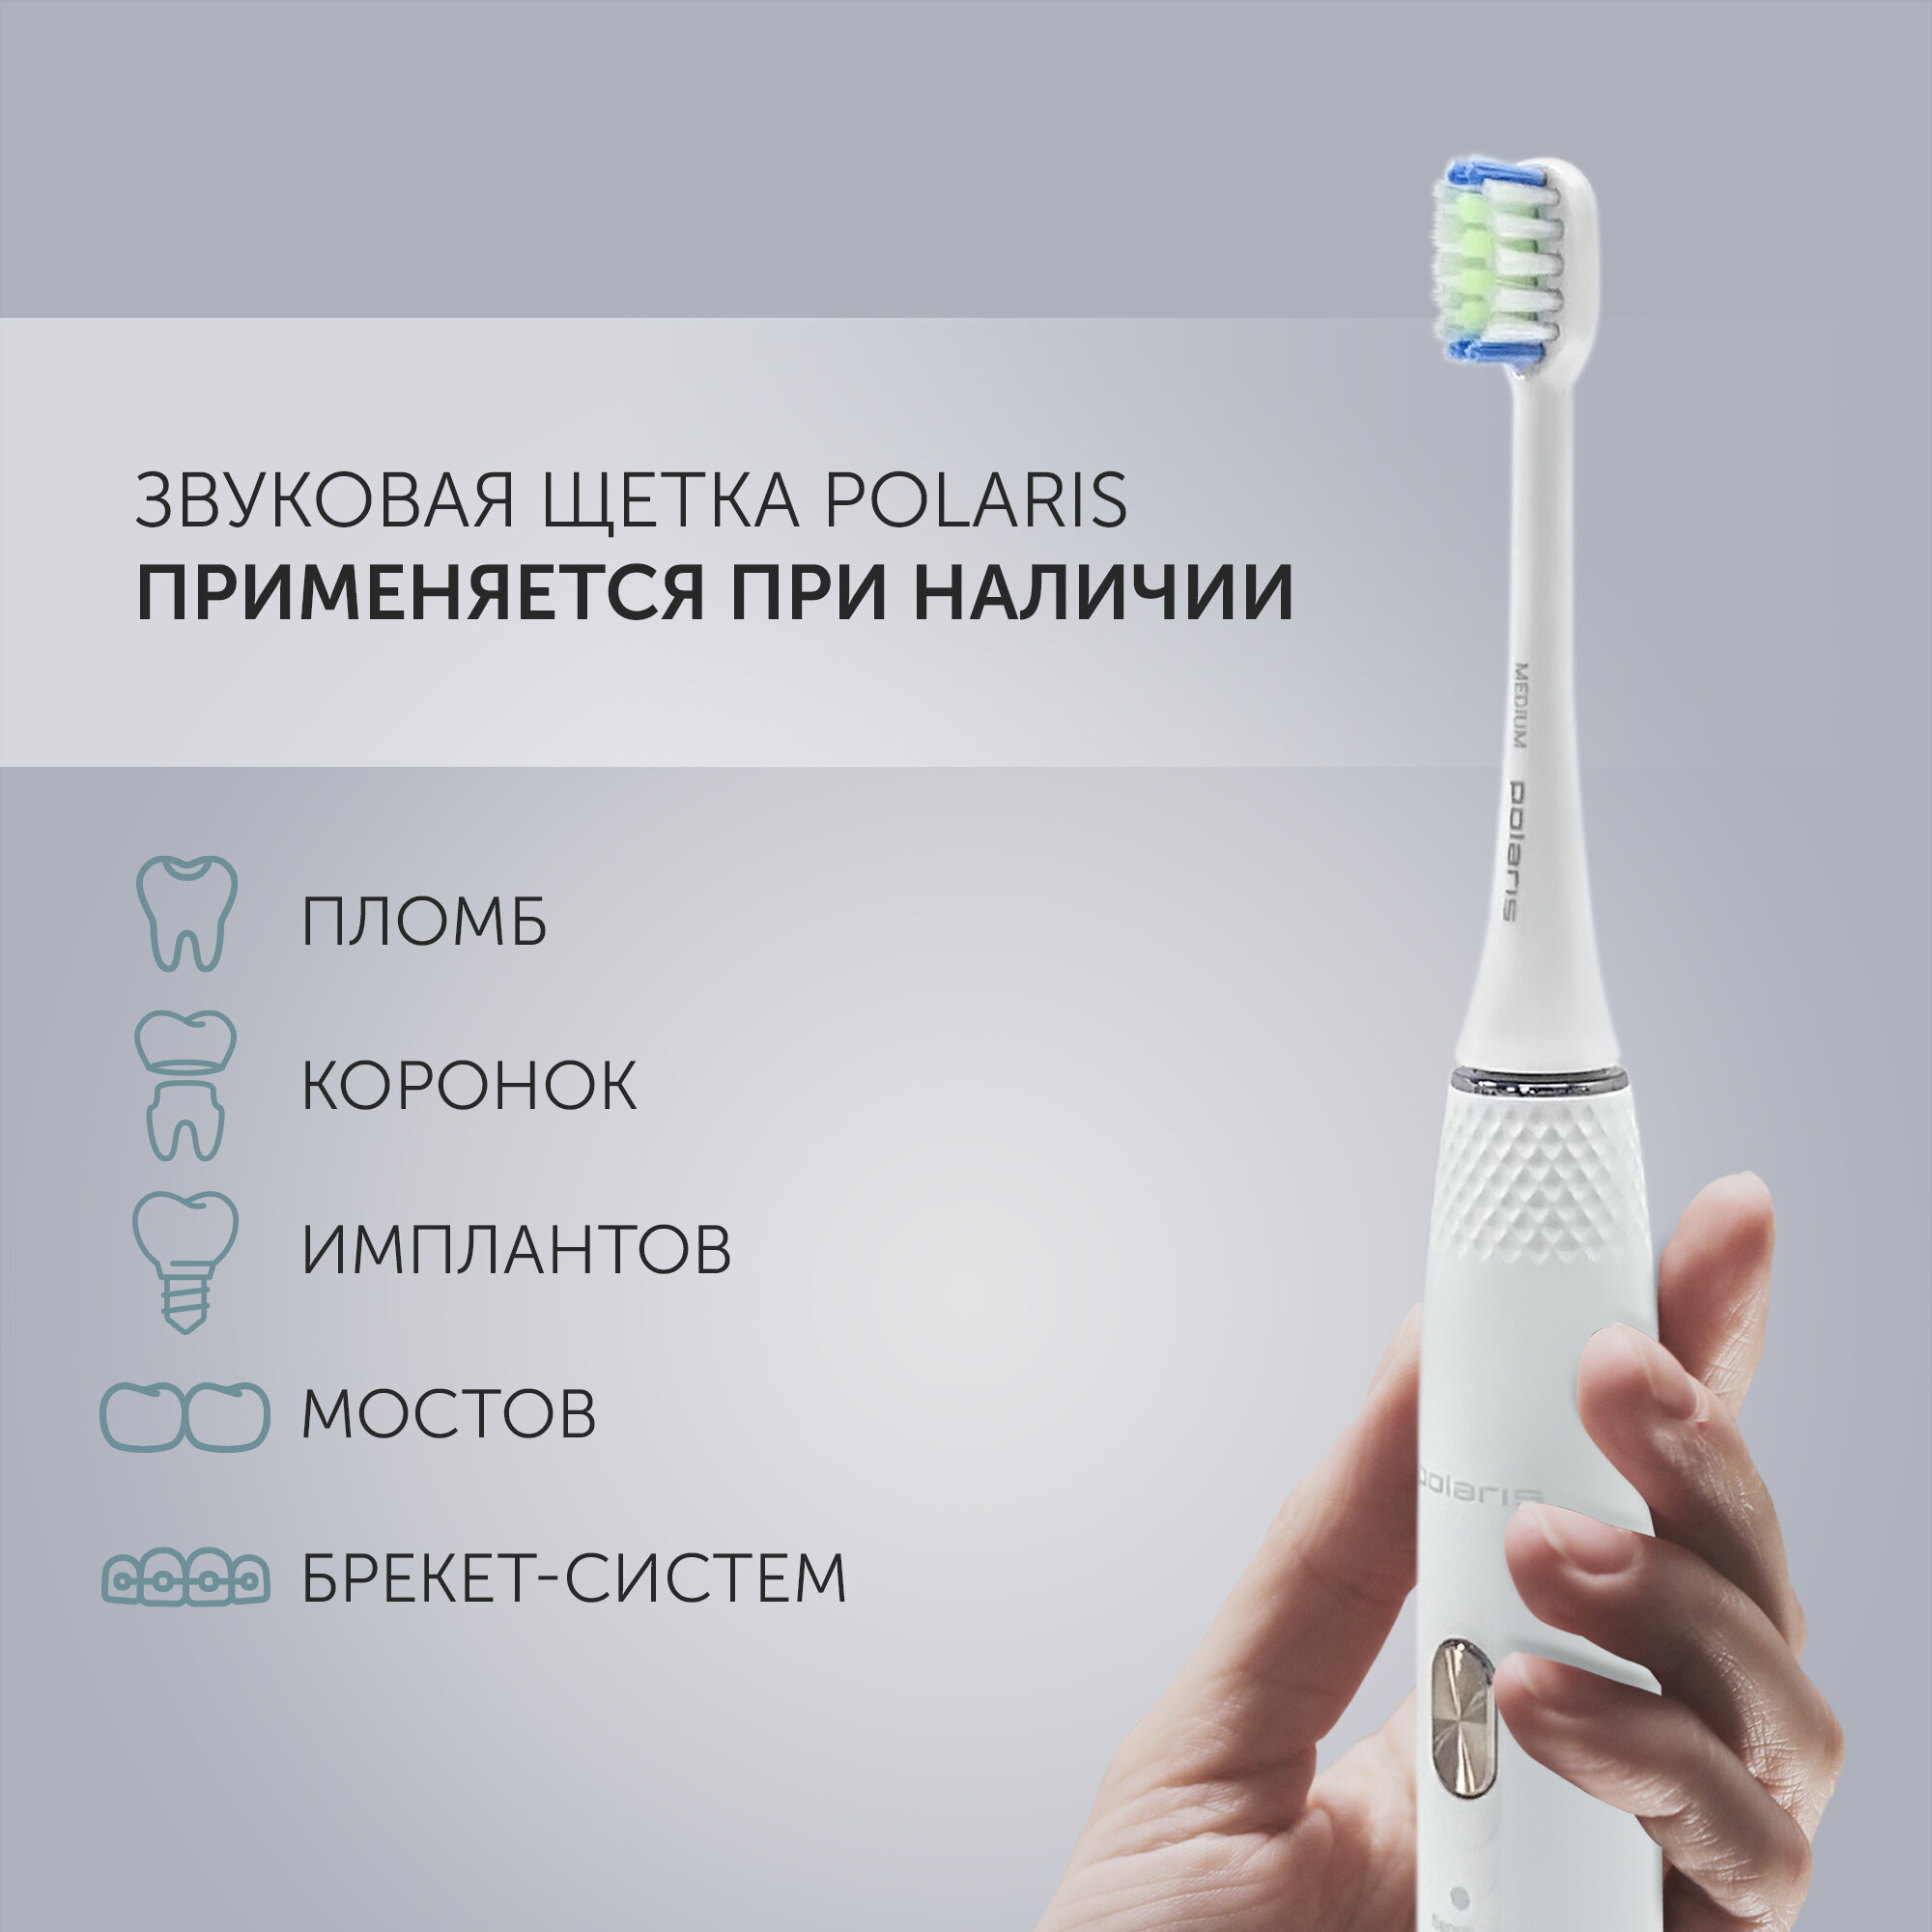 Электрическая зубная щетка Polaris PETB 0701 TC - фото №4